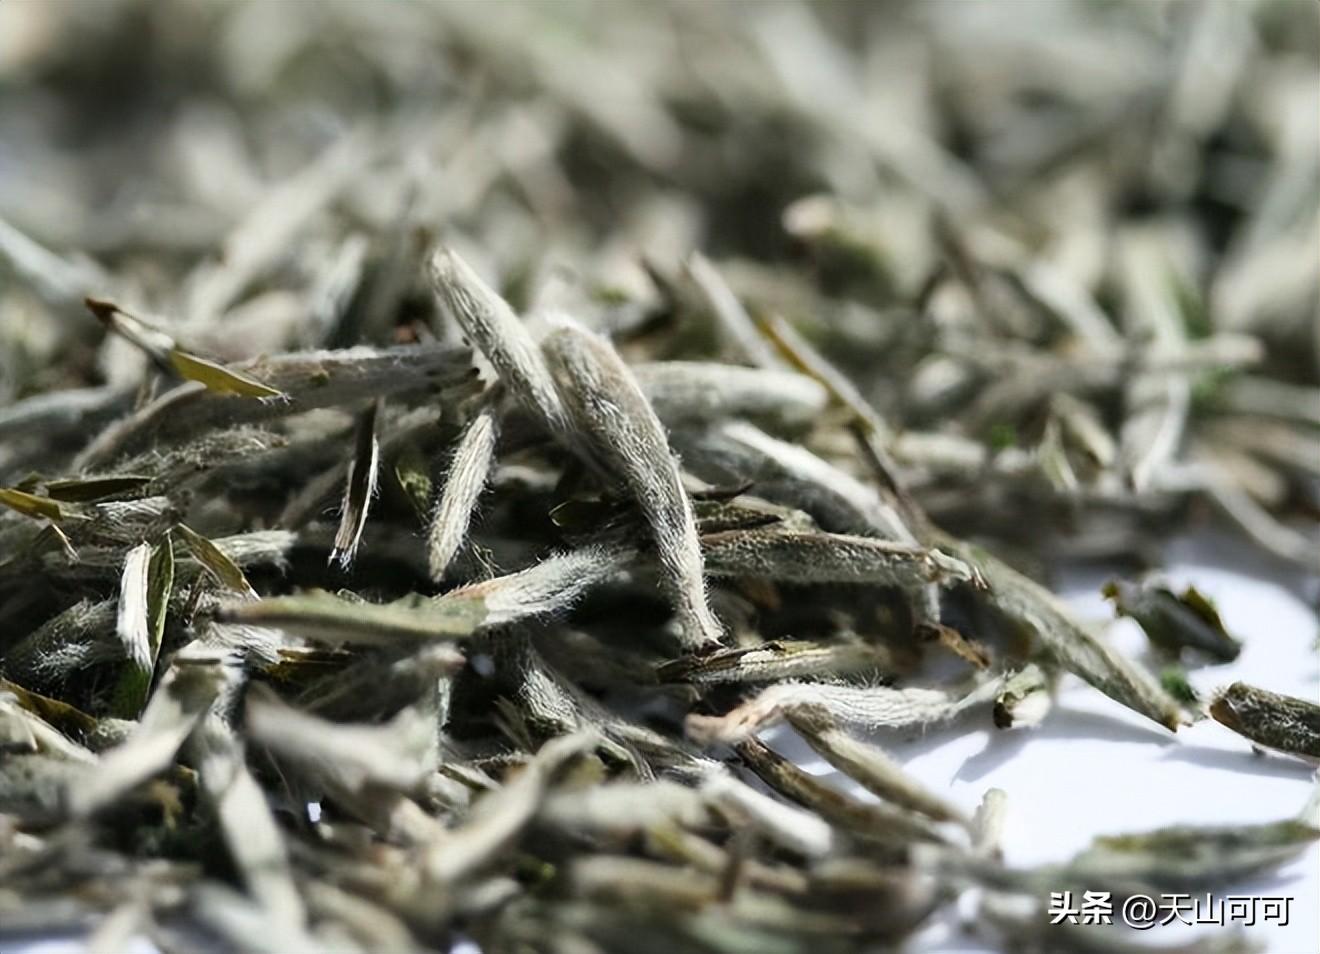 白茶和绿茶有什么区别？白茶和绿茶的区别